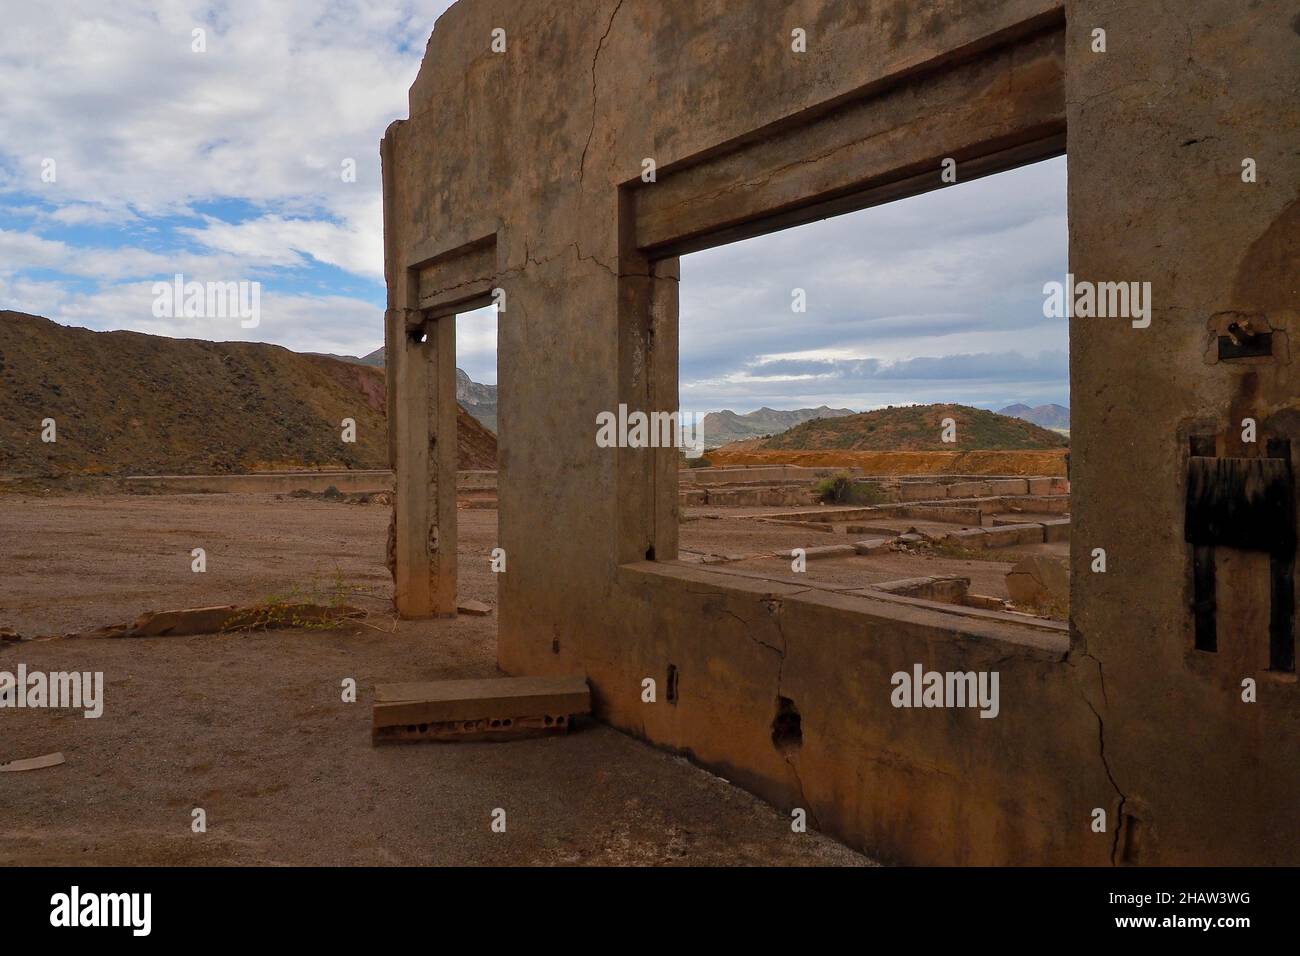 Vista attraverso le finestre di una rovina sul sito della miniera, Mazarron, Murcia, Spagna Foto Stock